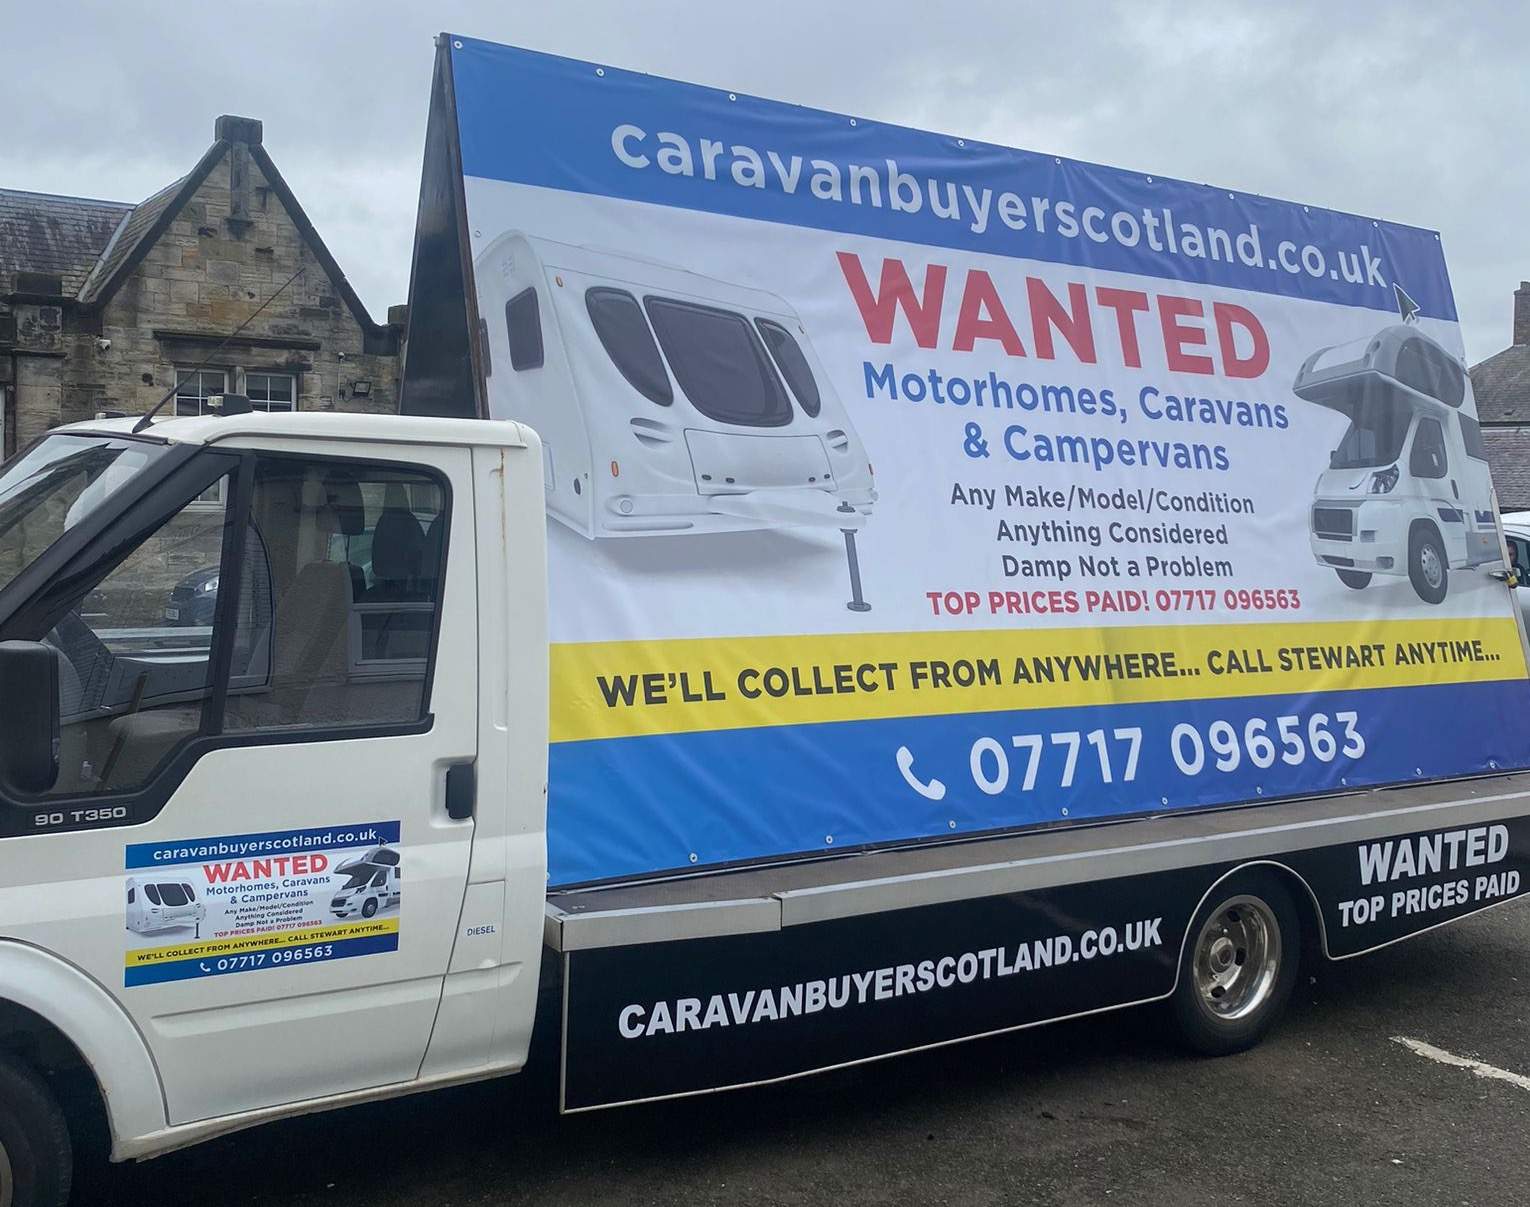 Sell your motorhome, caravan or campervan hoarding on side of lorry